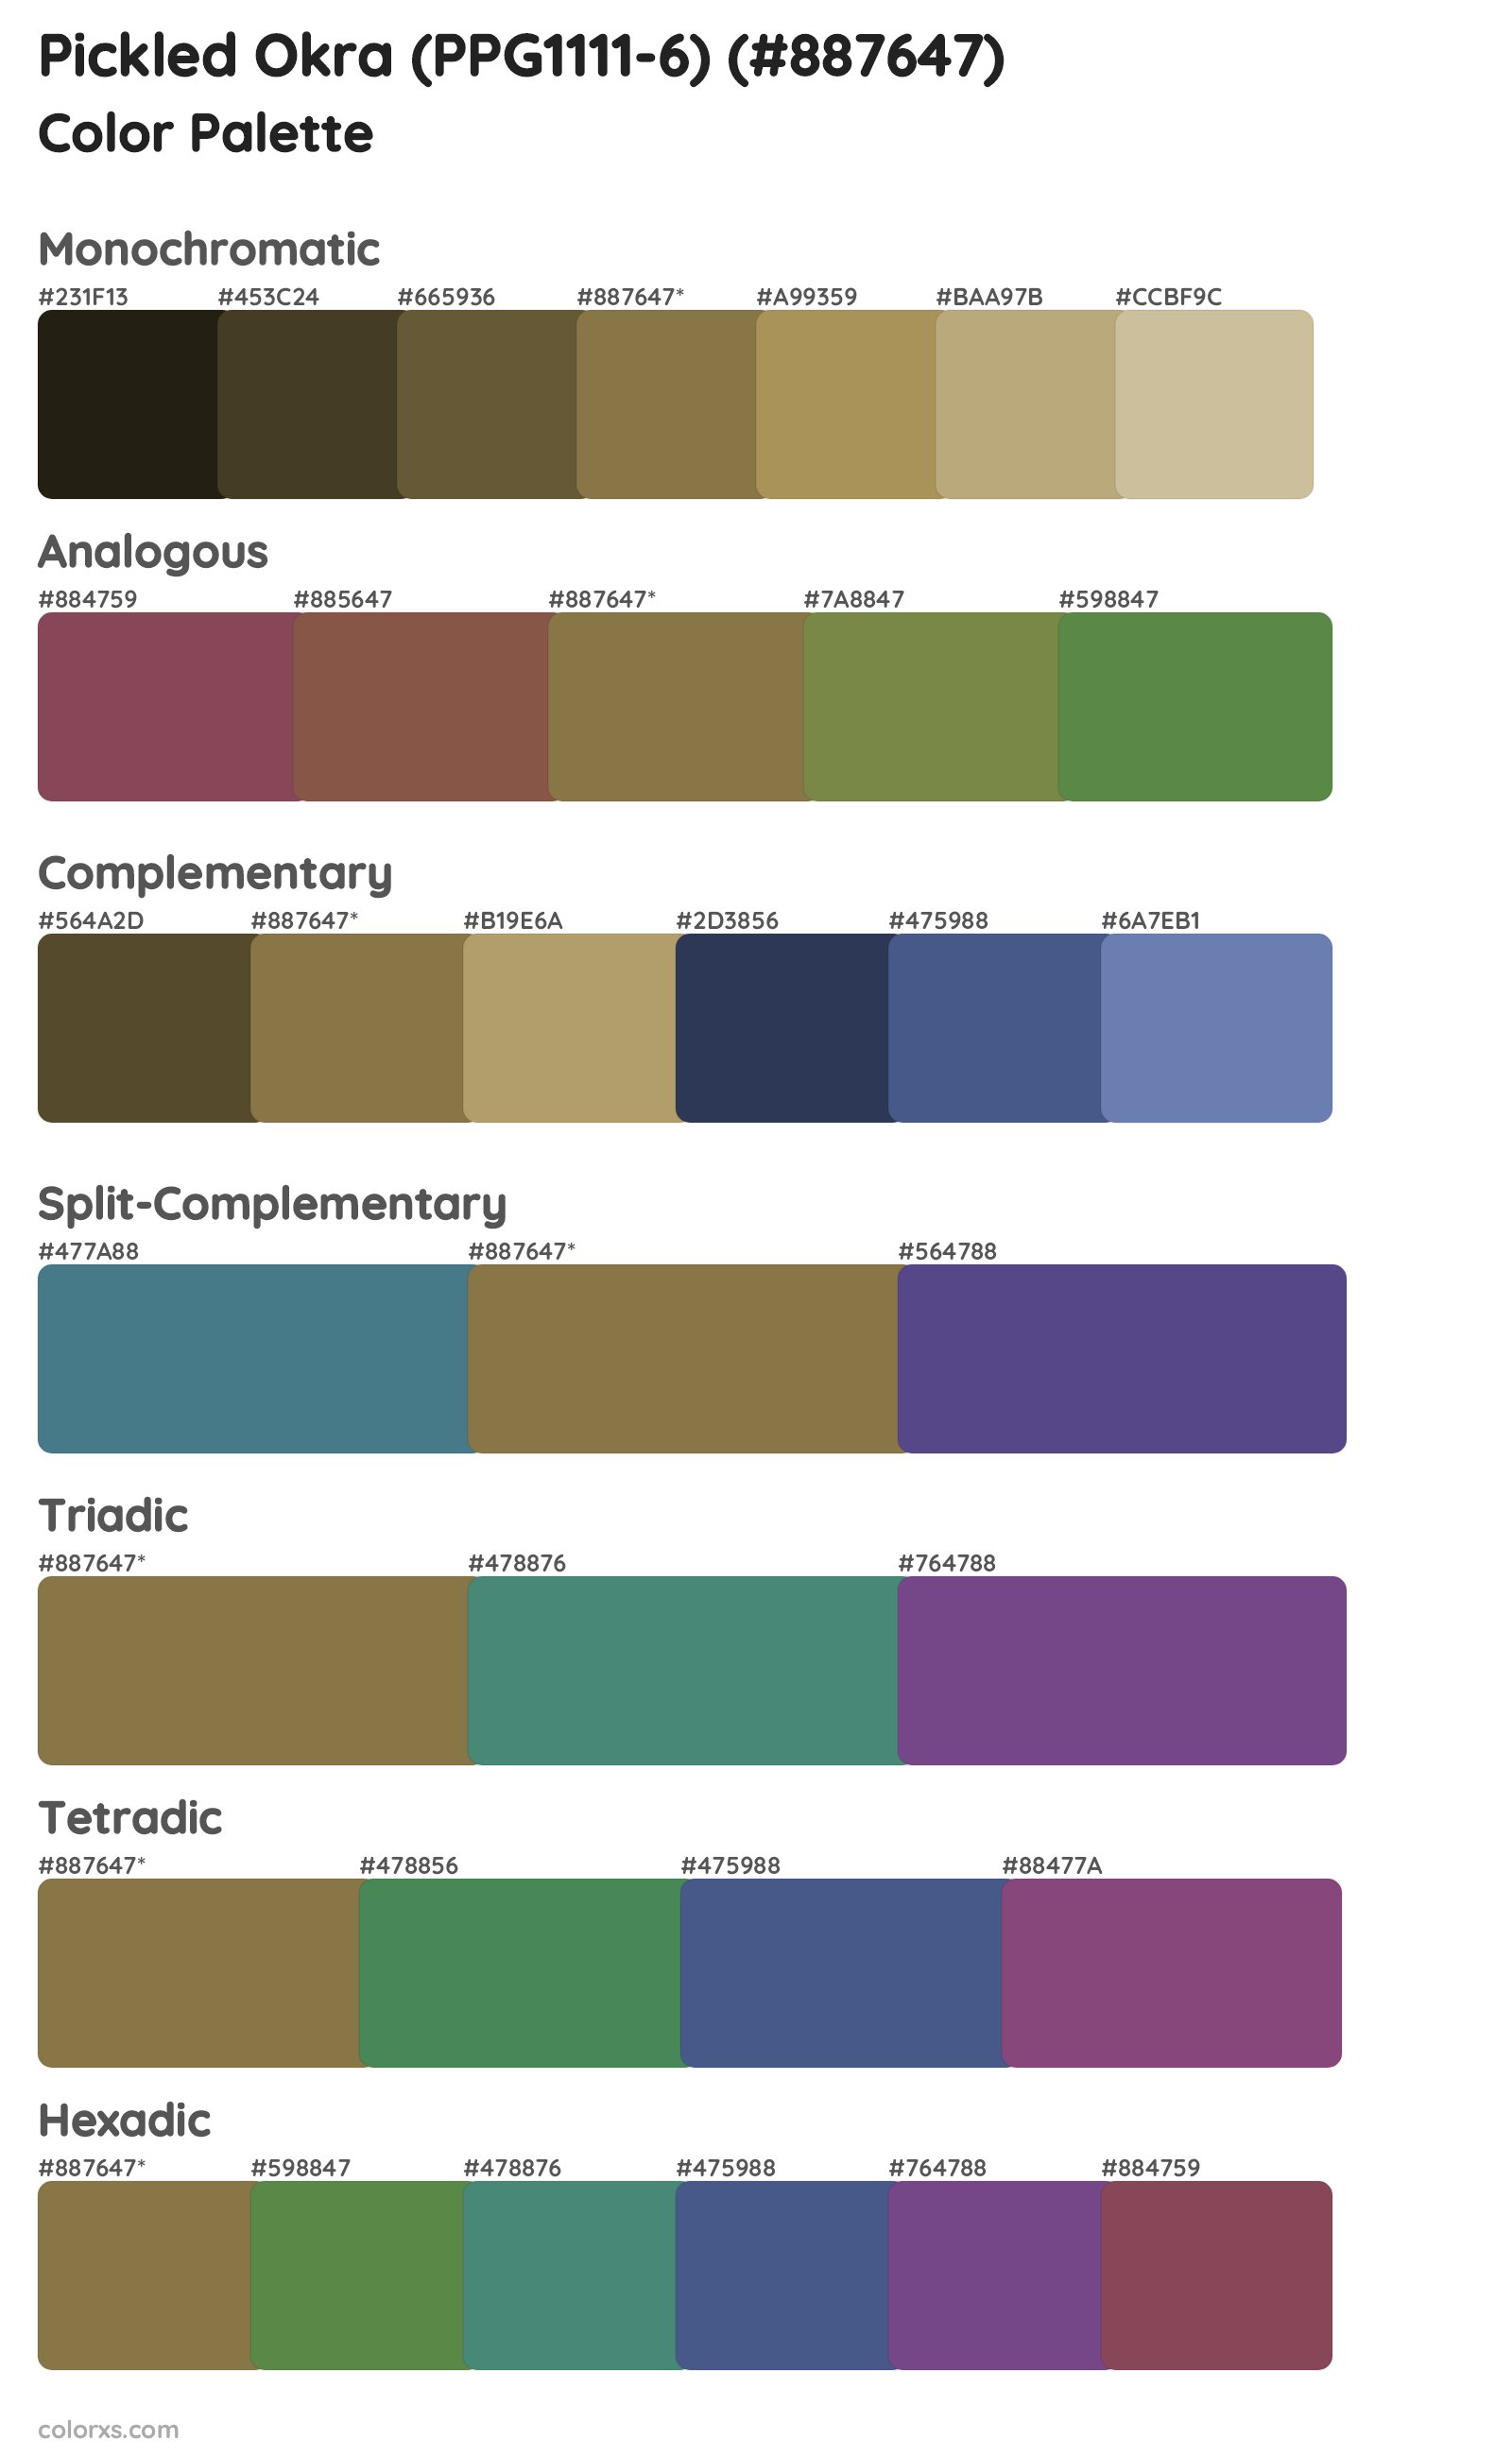 Pickled Okra (PPG1111-6) Color Scheme Palettes